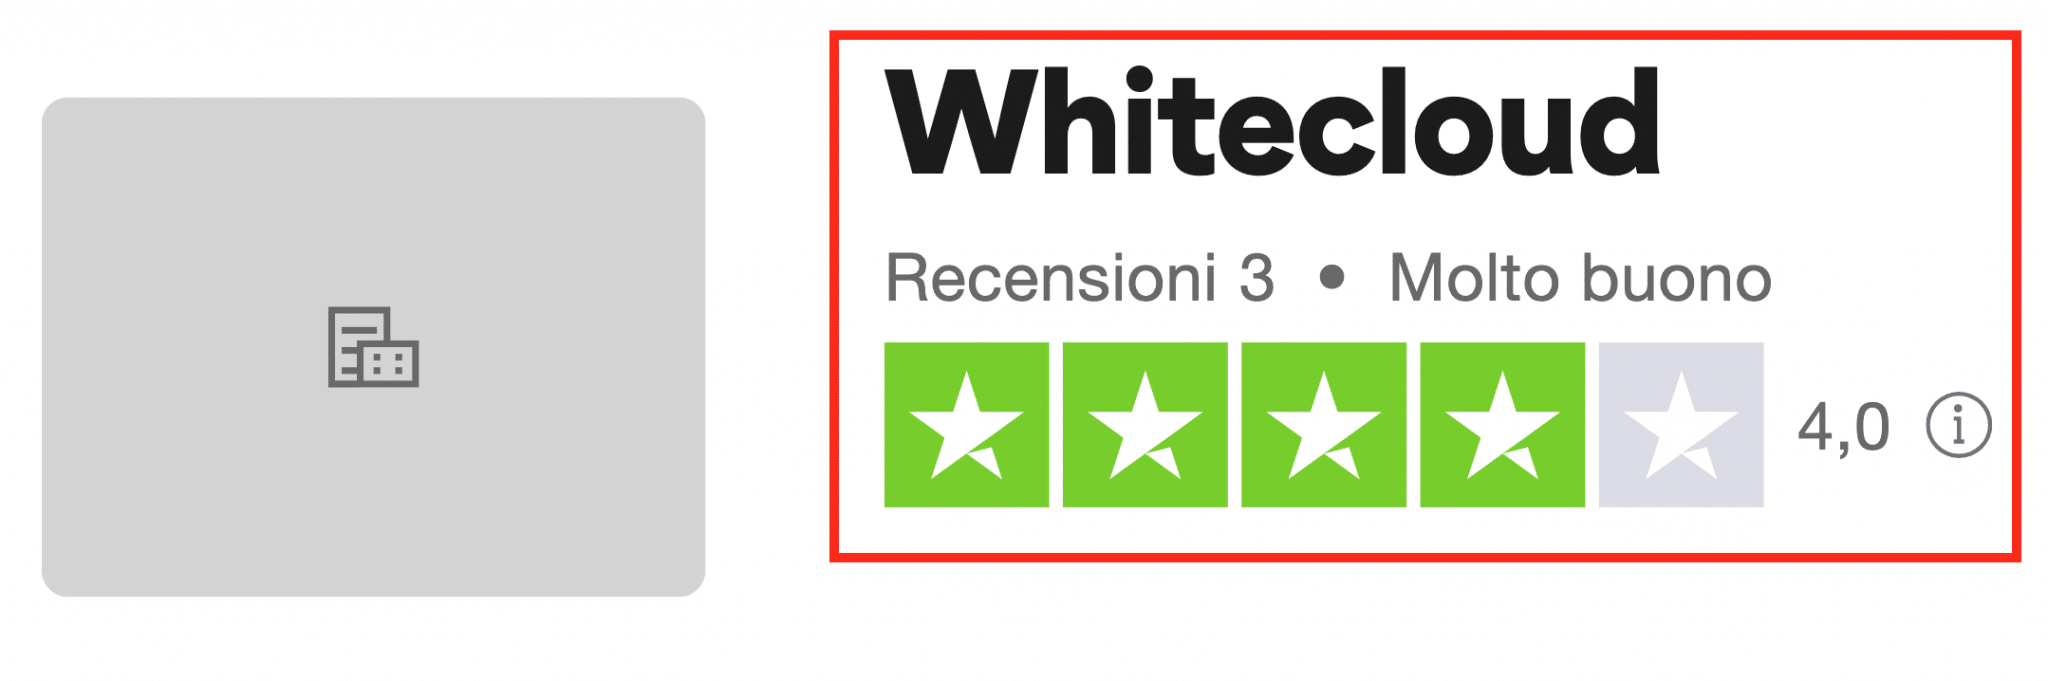 Whitecloud capital recensioni positive su Ttrustpilot, ma al momento ne ha solo 3